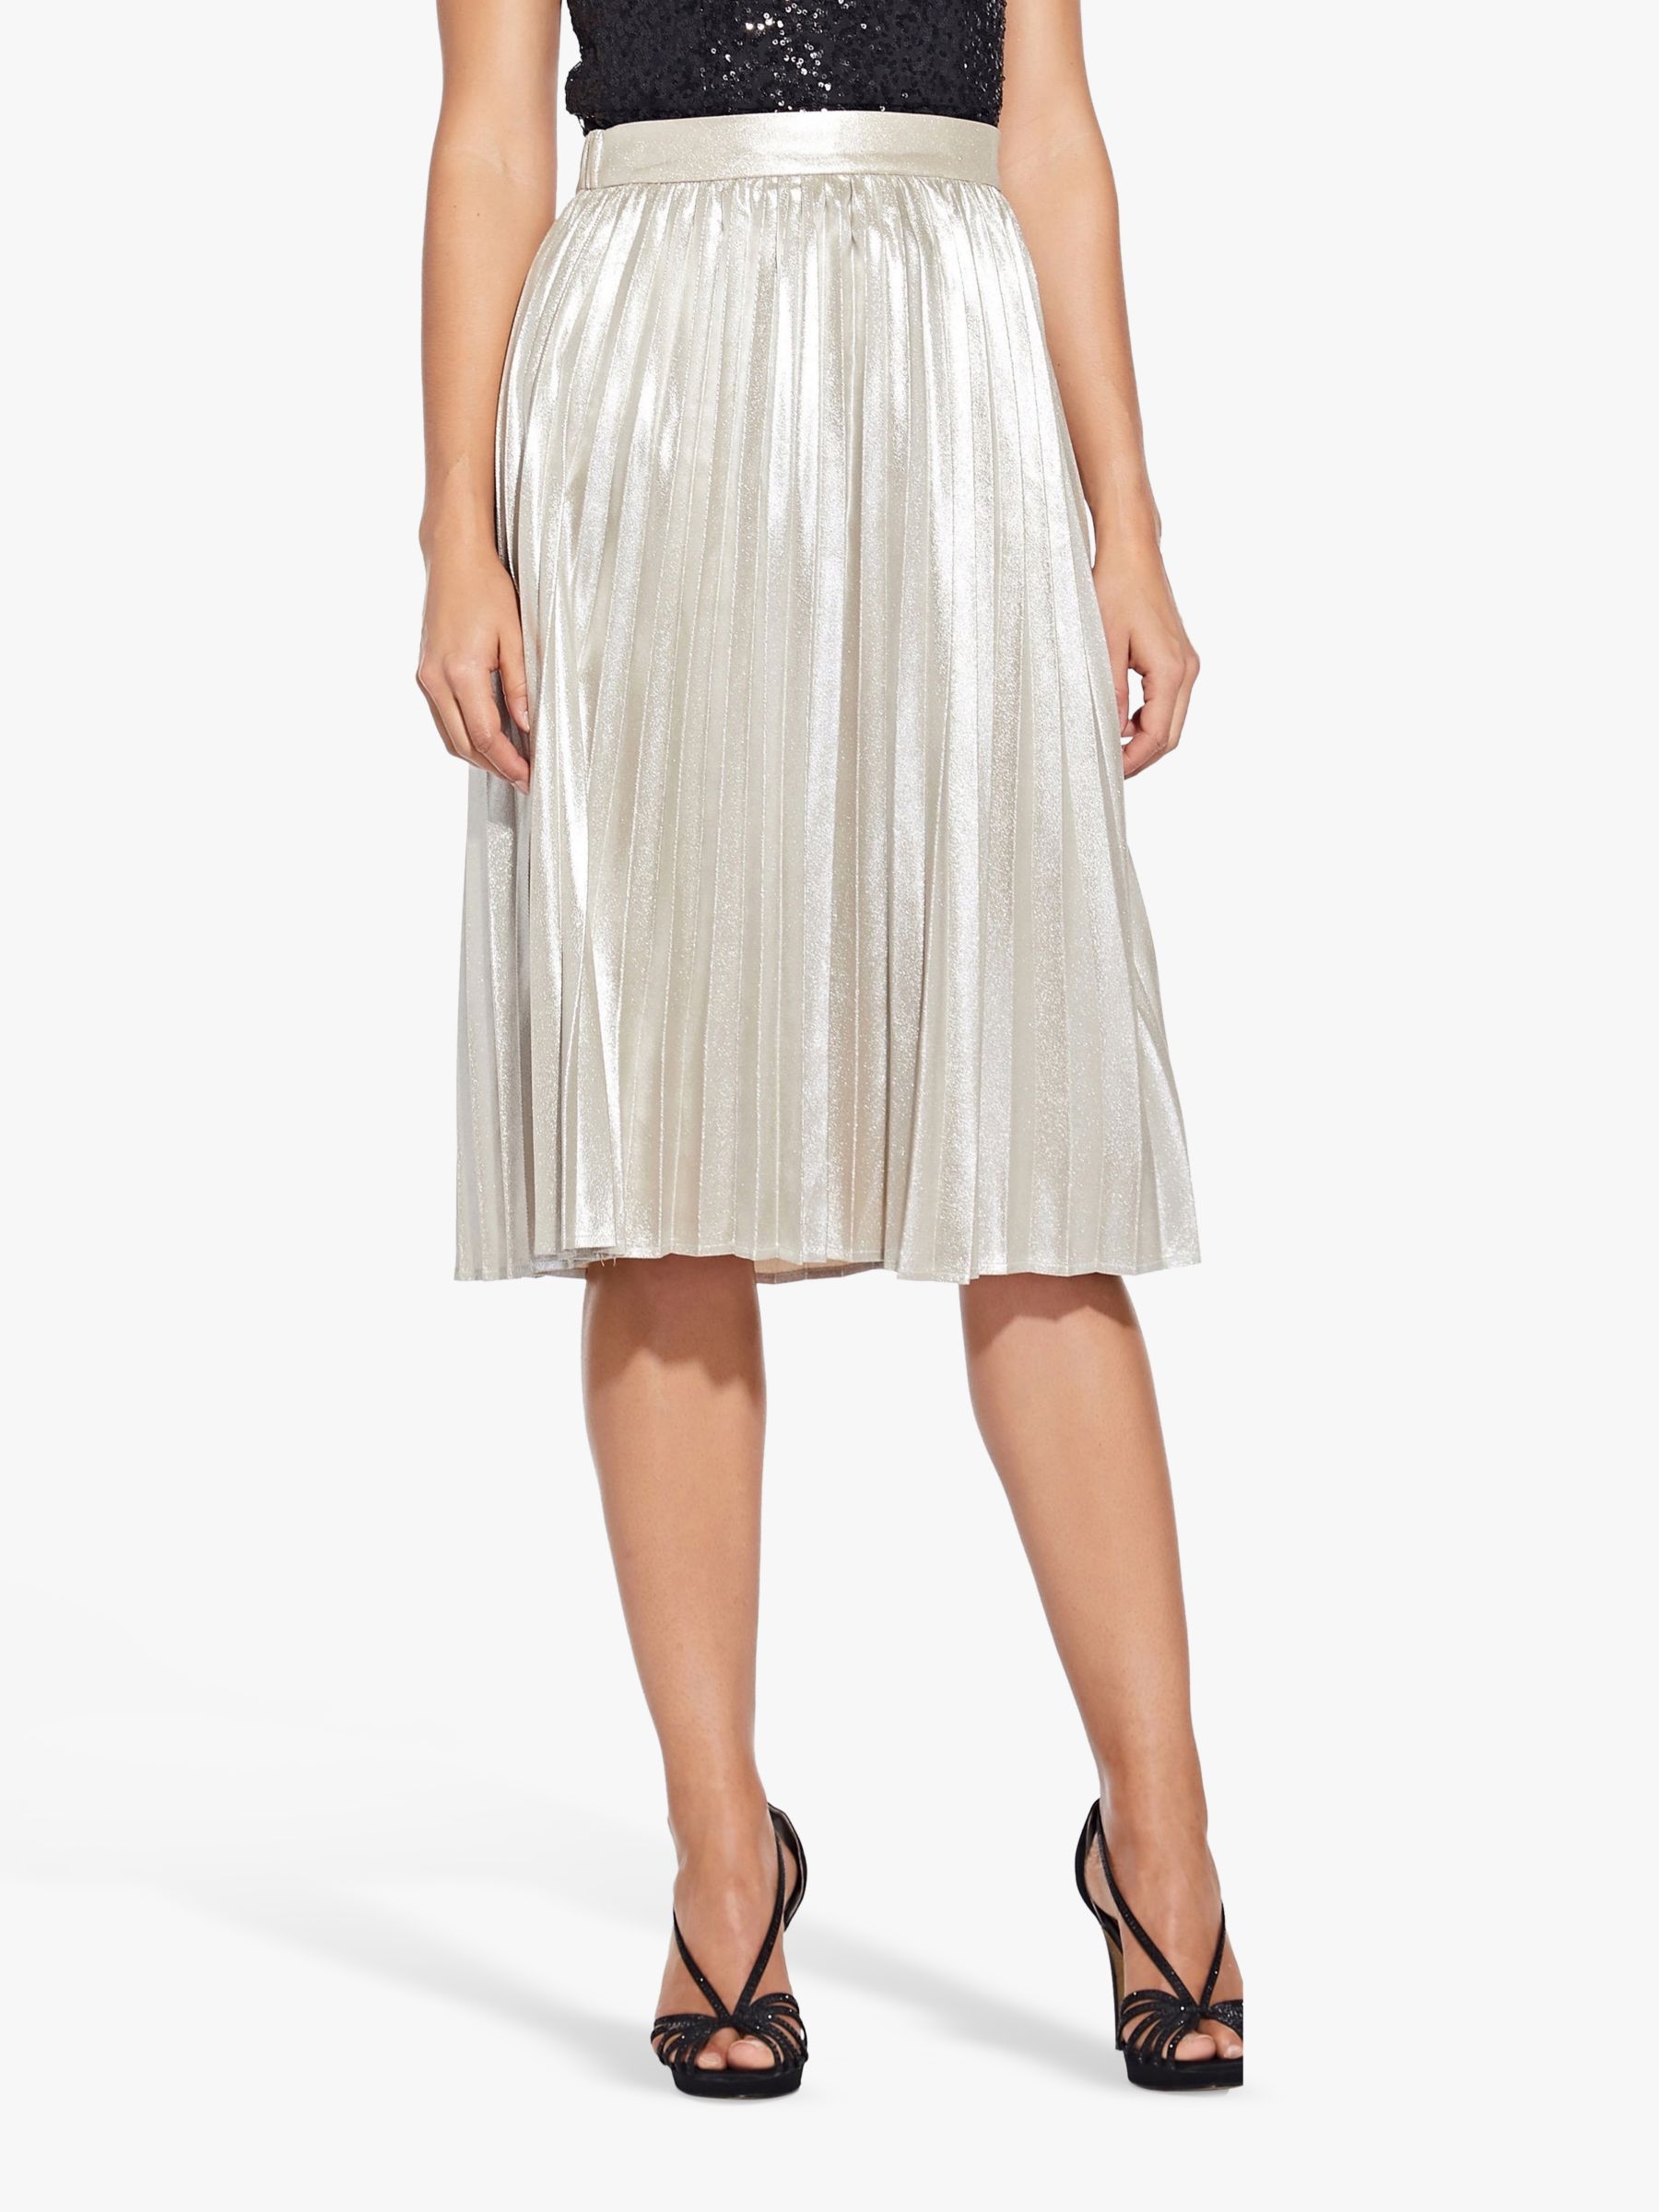 Adrianna Papell Metallic Pleat Skirt, Gold